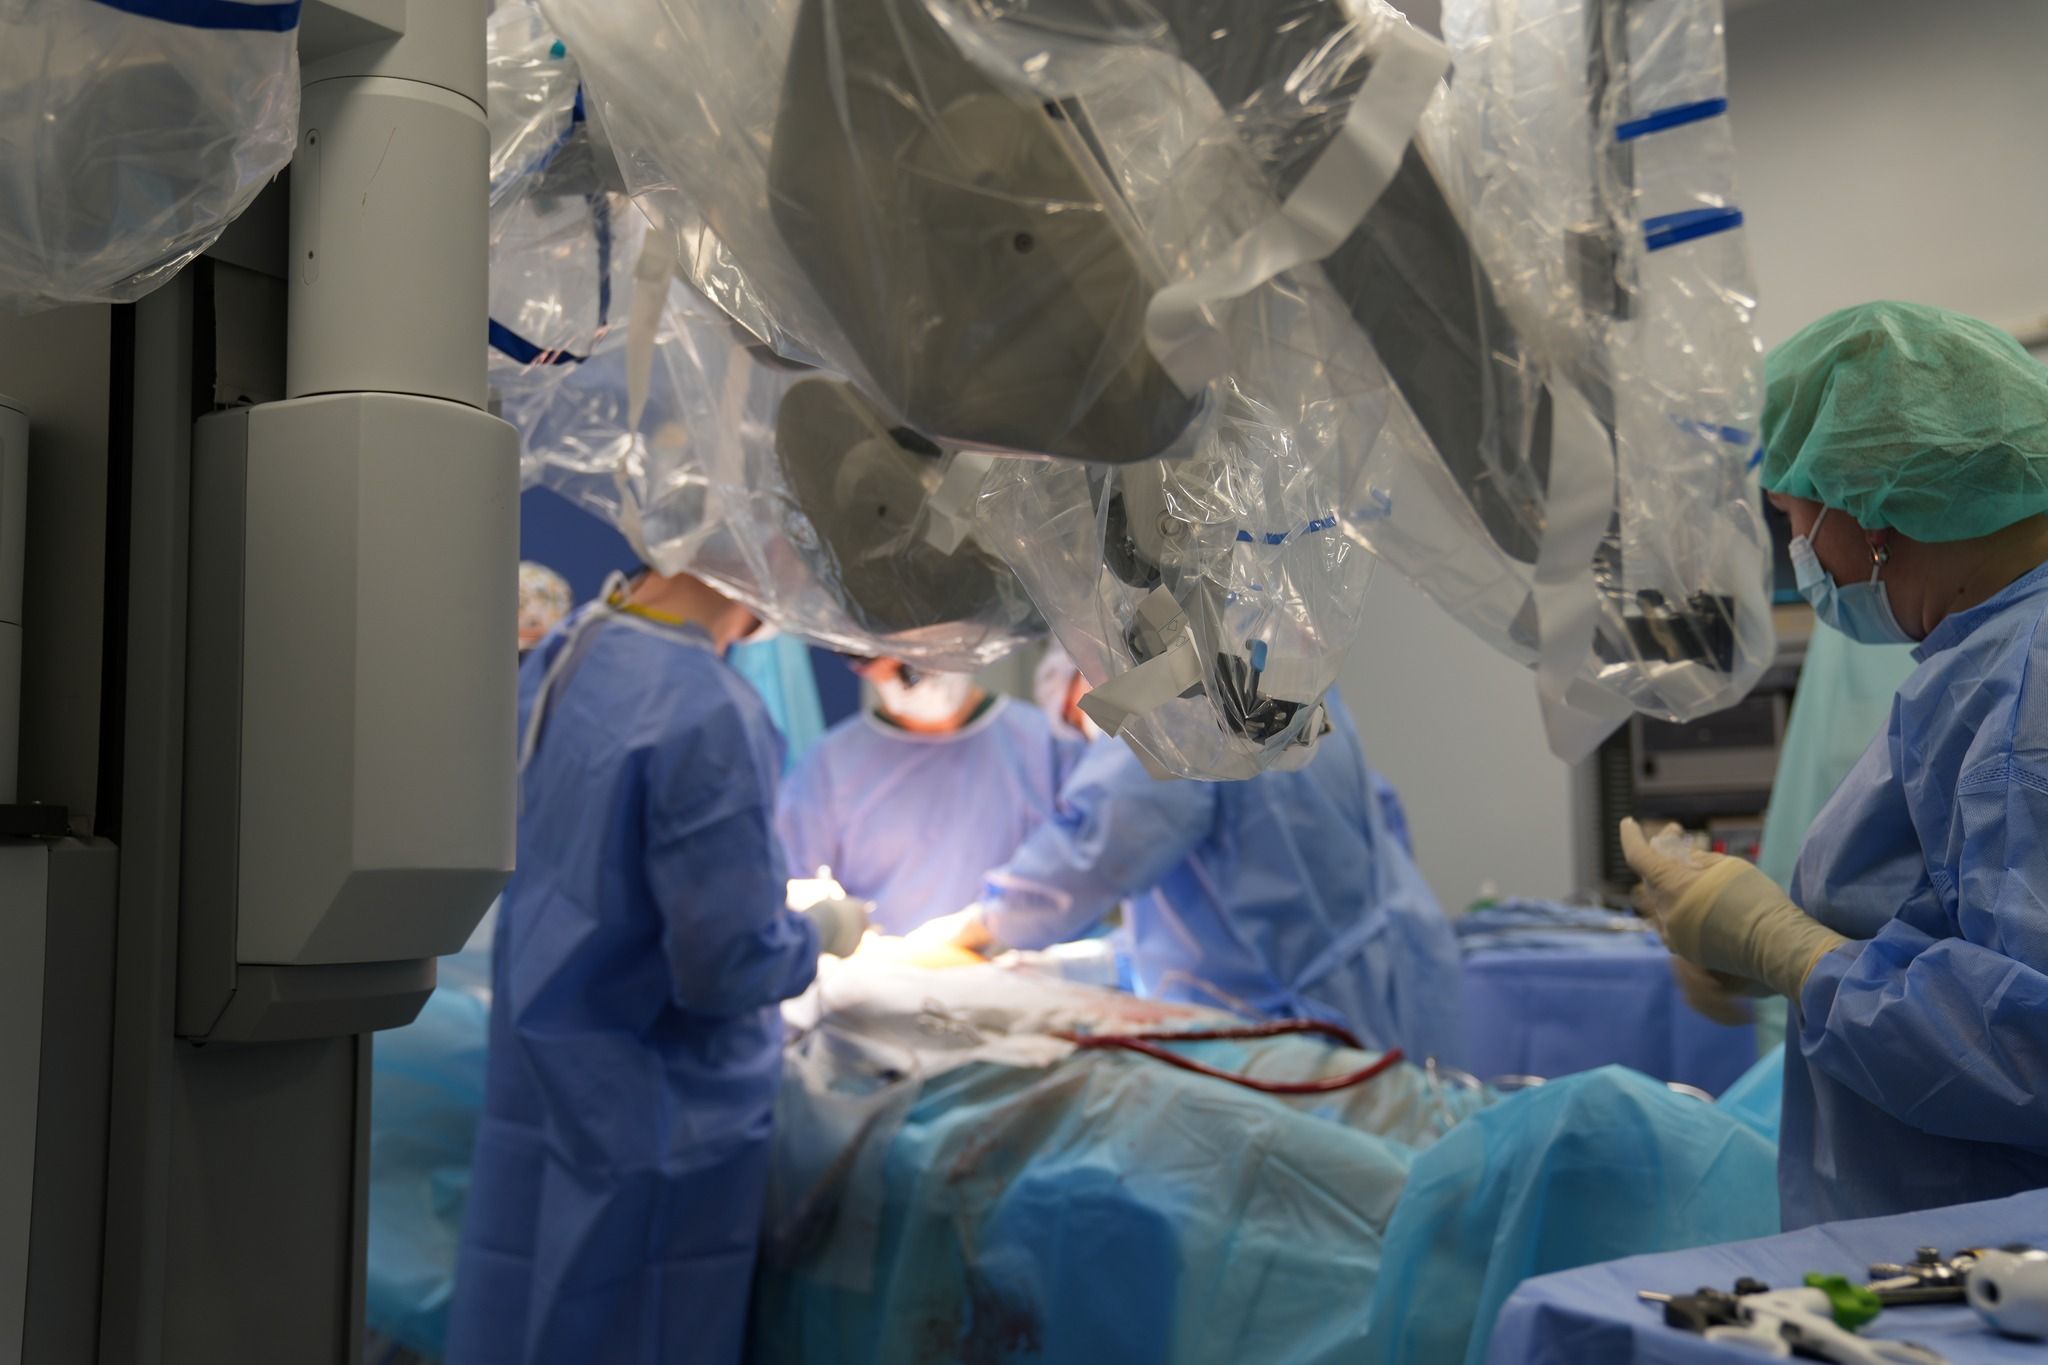 Допоміг Da Vinci: в Україні операцію на серці вперше провели із застосуванням робота, фото